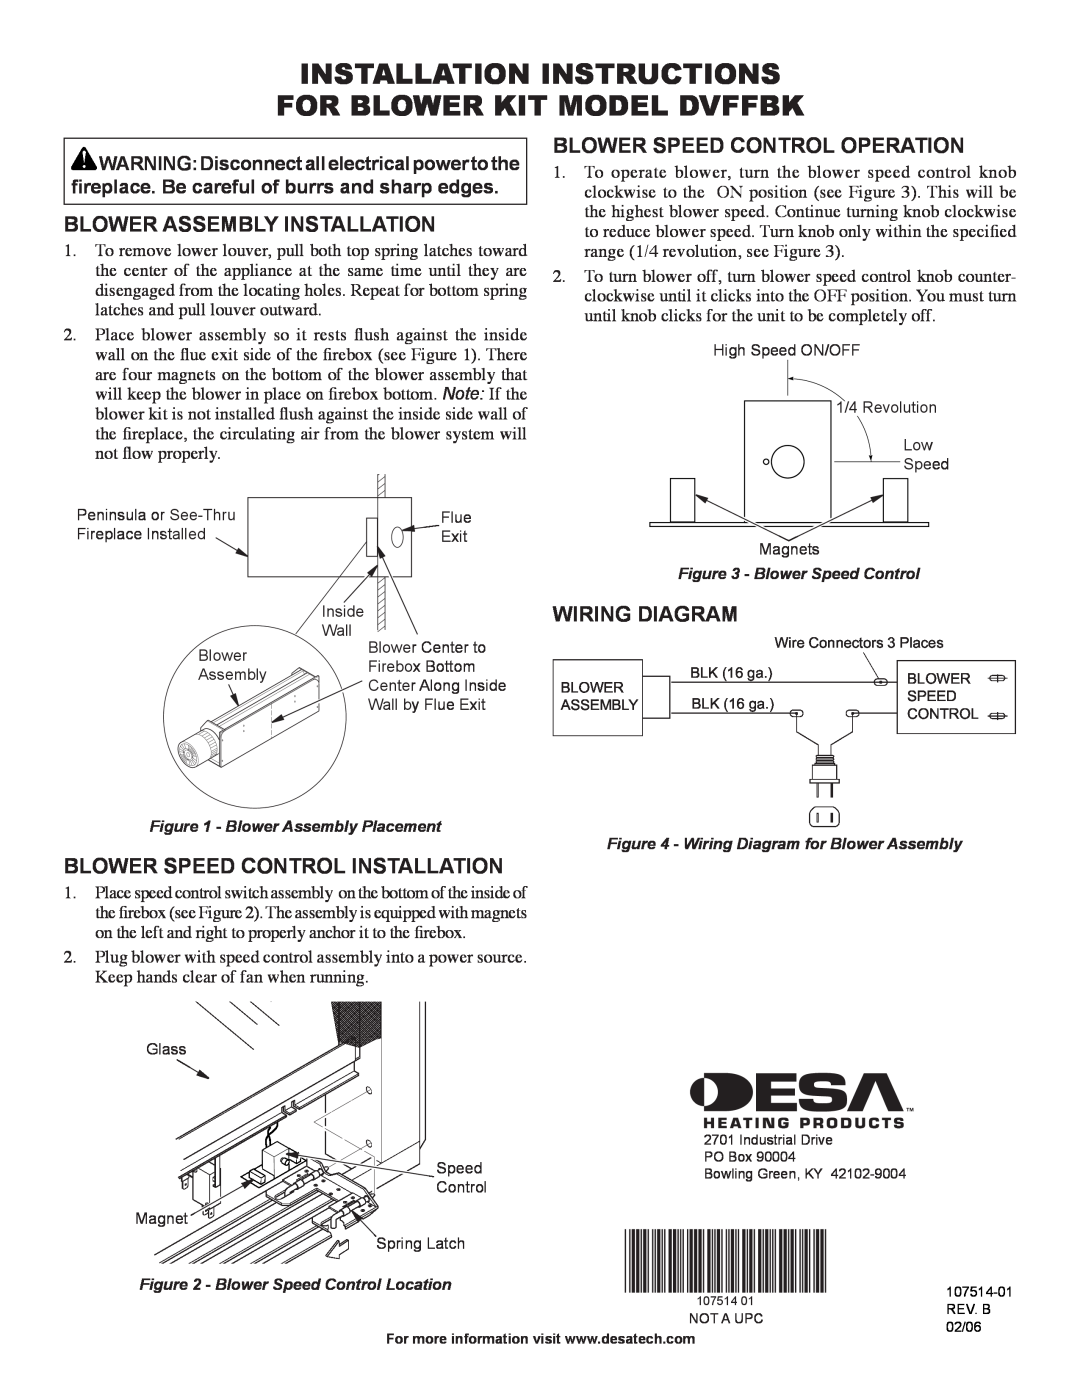 Desa installation instructions installation instructions FOR BLOWER KIT MODEL DVFFBK, Blower Assembly Installation 